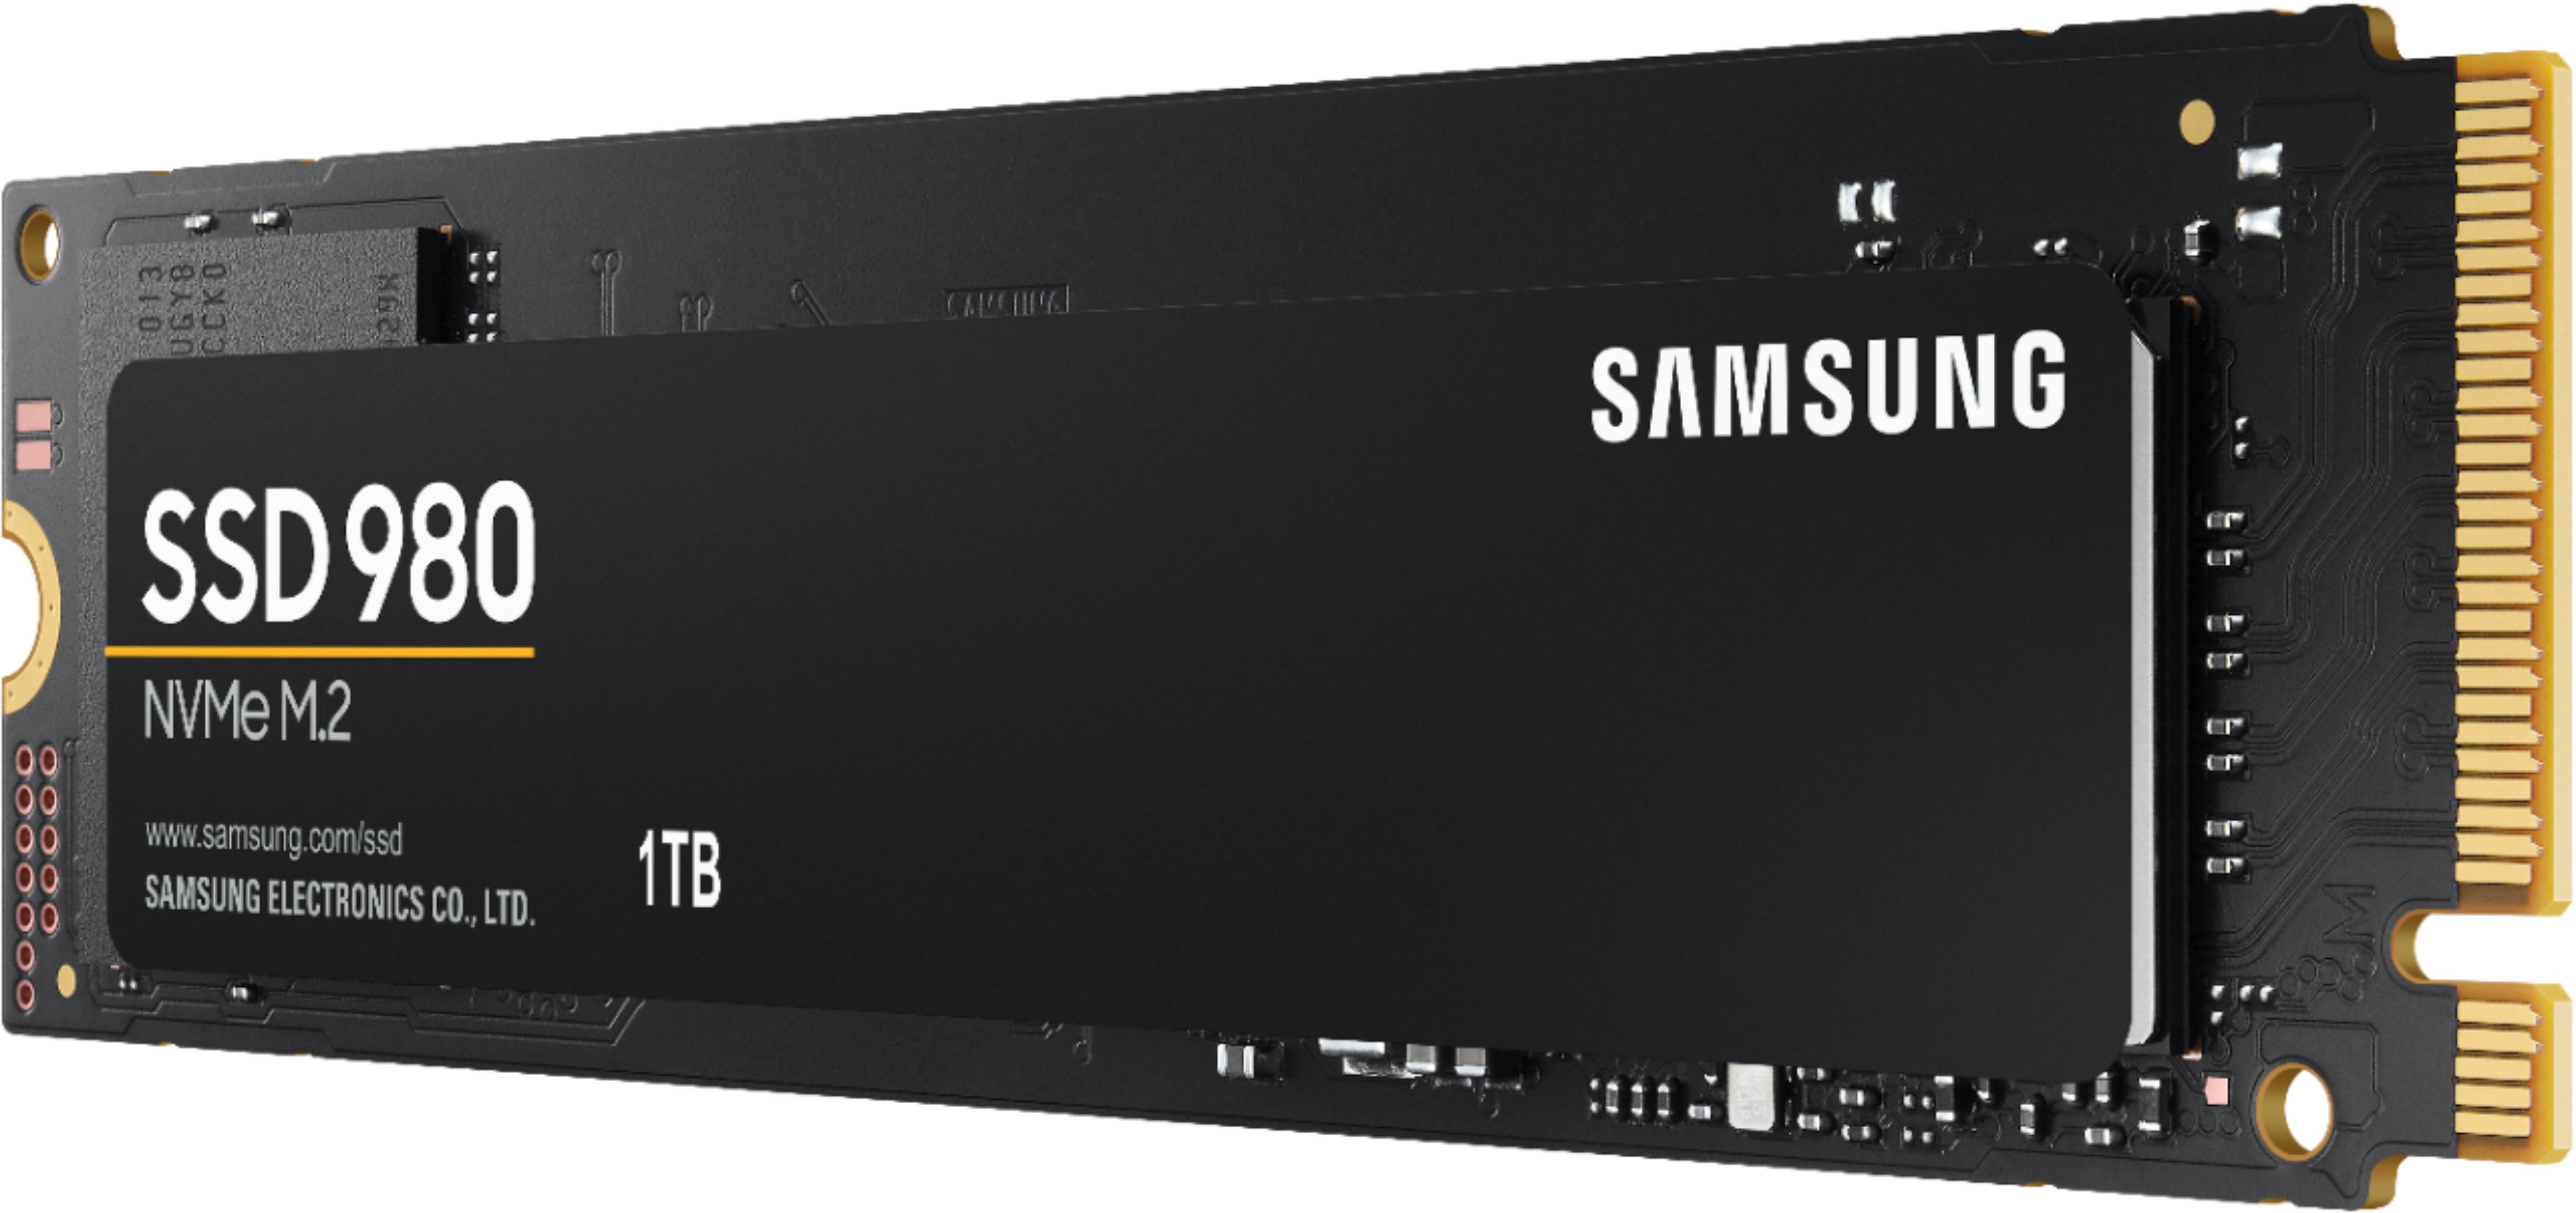 miste dig selv legeplads nøjagtigt Samsung 980 1TB Internal Gaming SSD PCIe Gen 3 x4 NVMe MZ-V8V1T0B/AM - Best  Buy